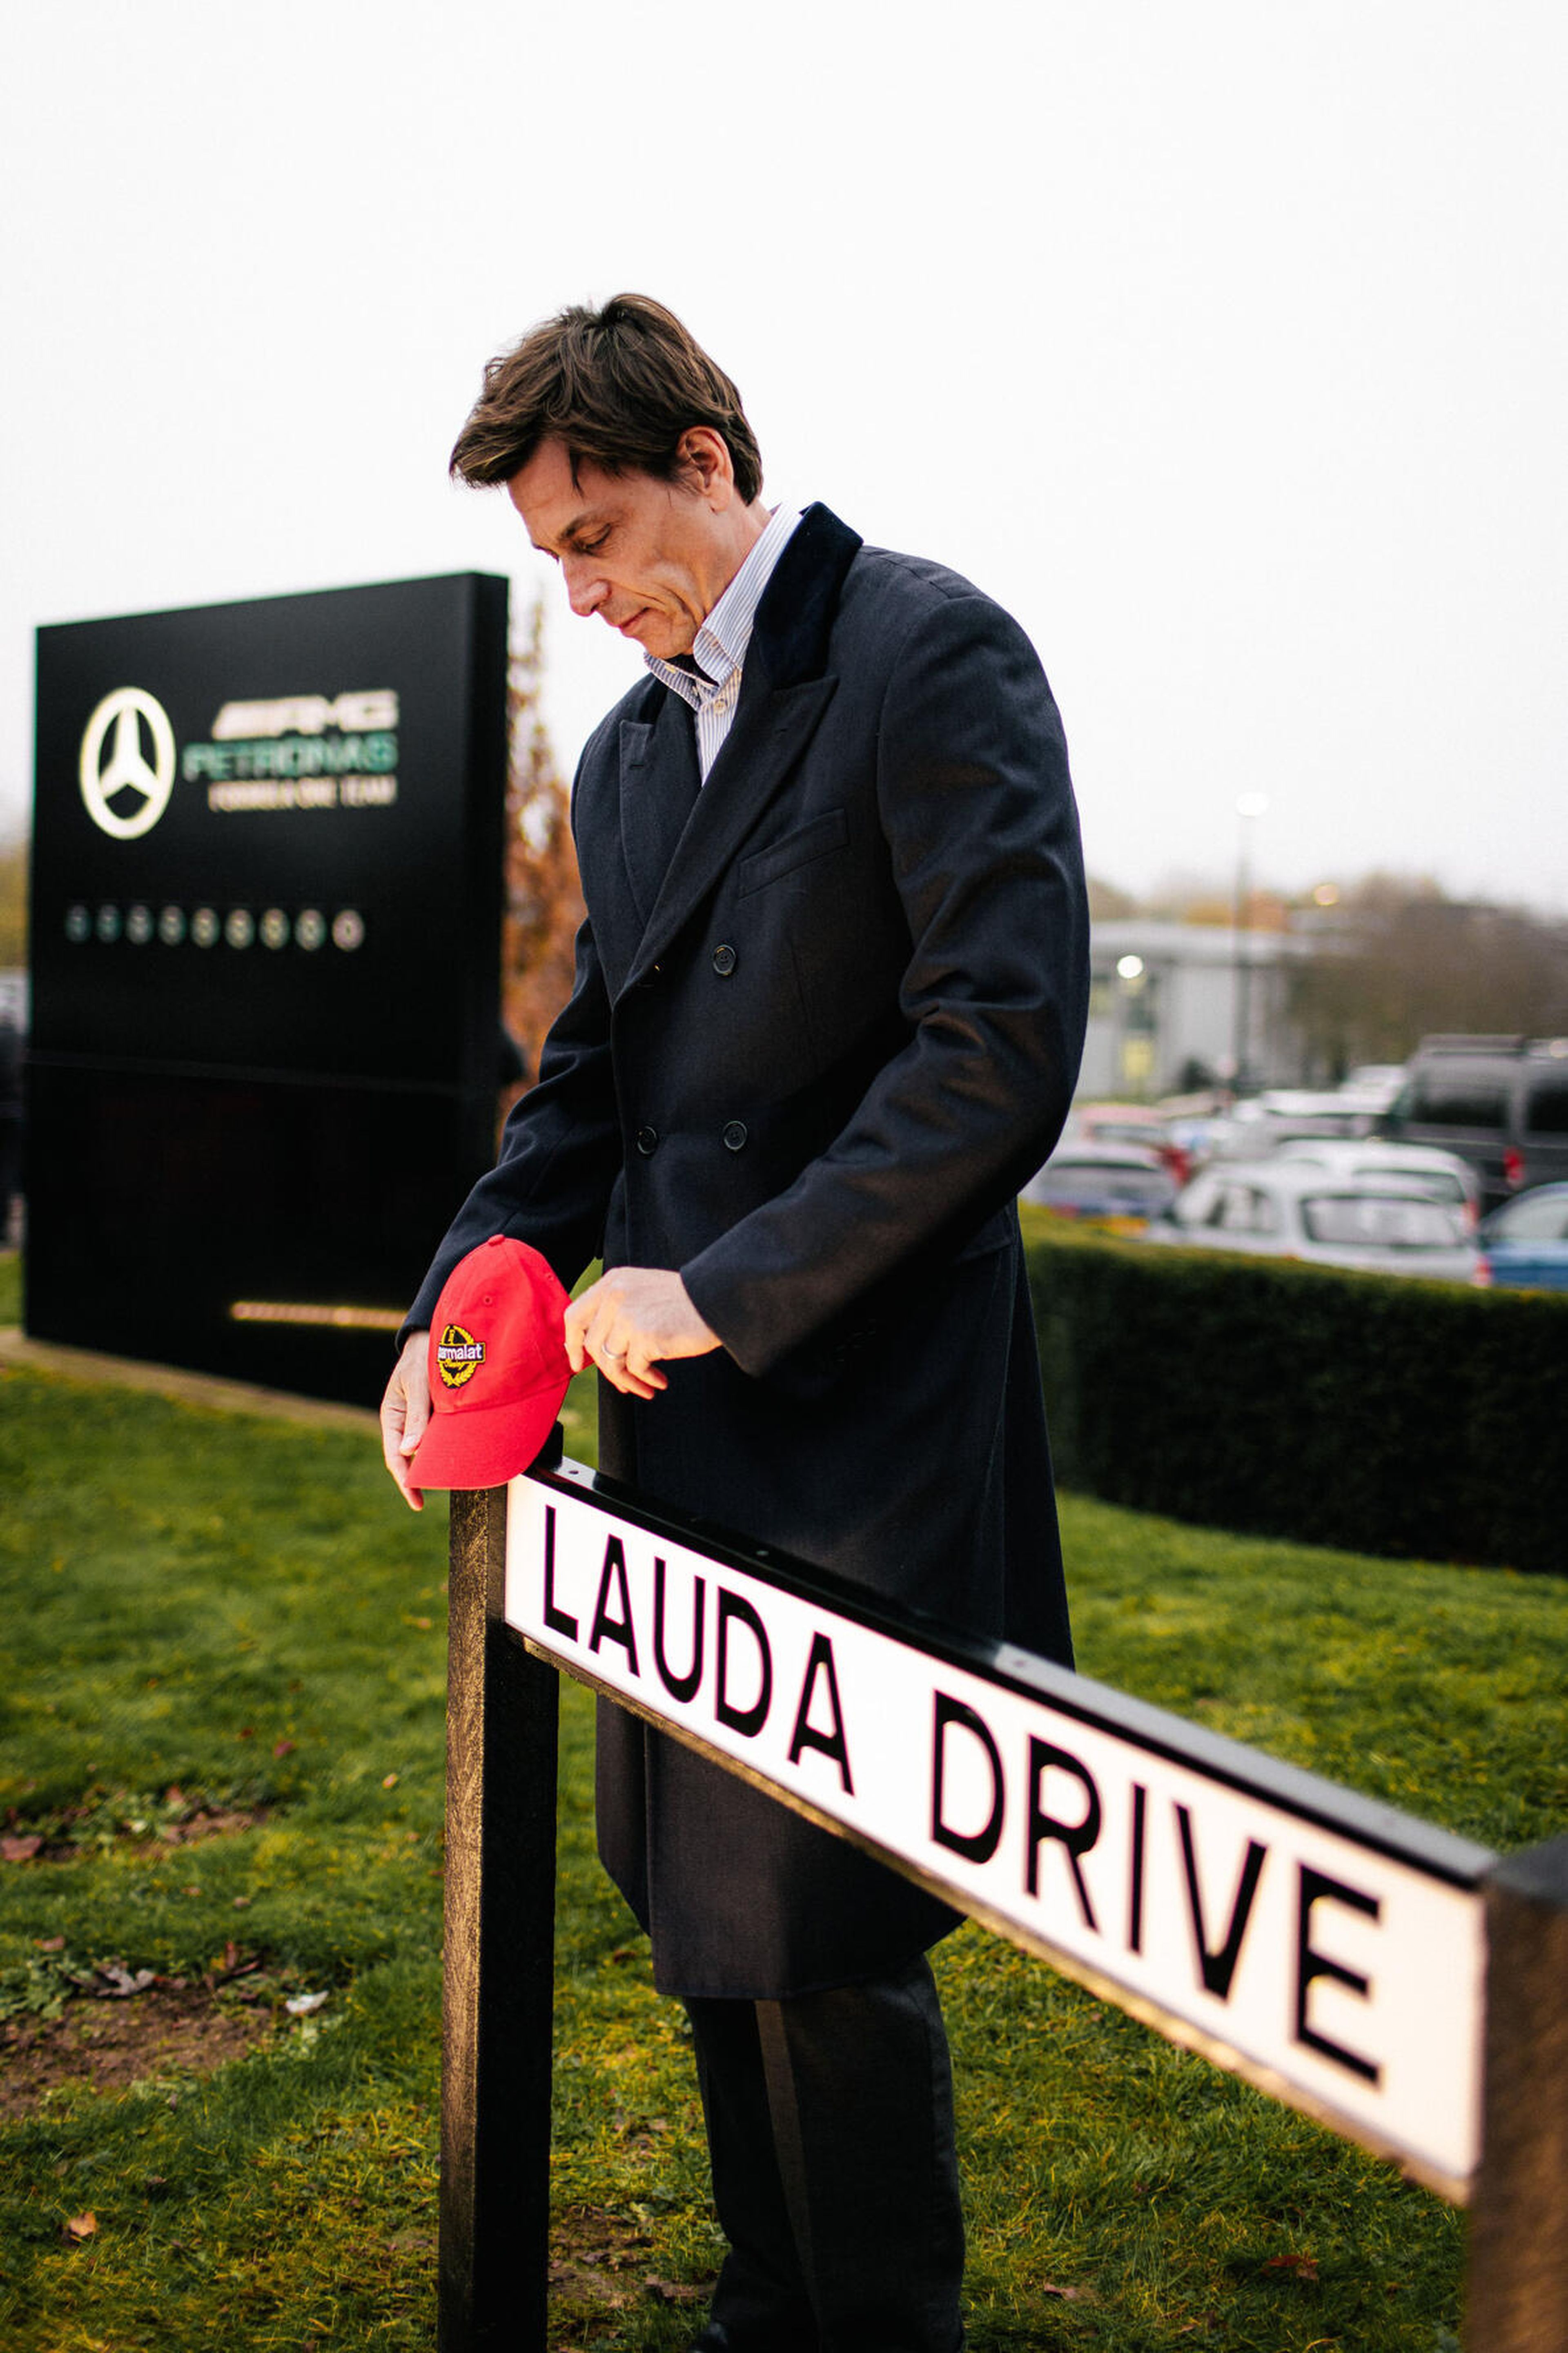 Toto Wolff revela el cartel de la calle Lauda Drive en Brackley